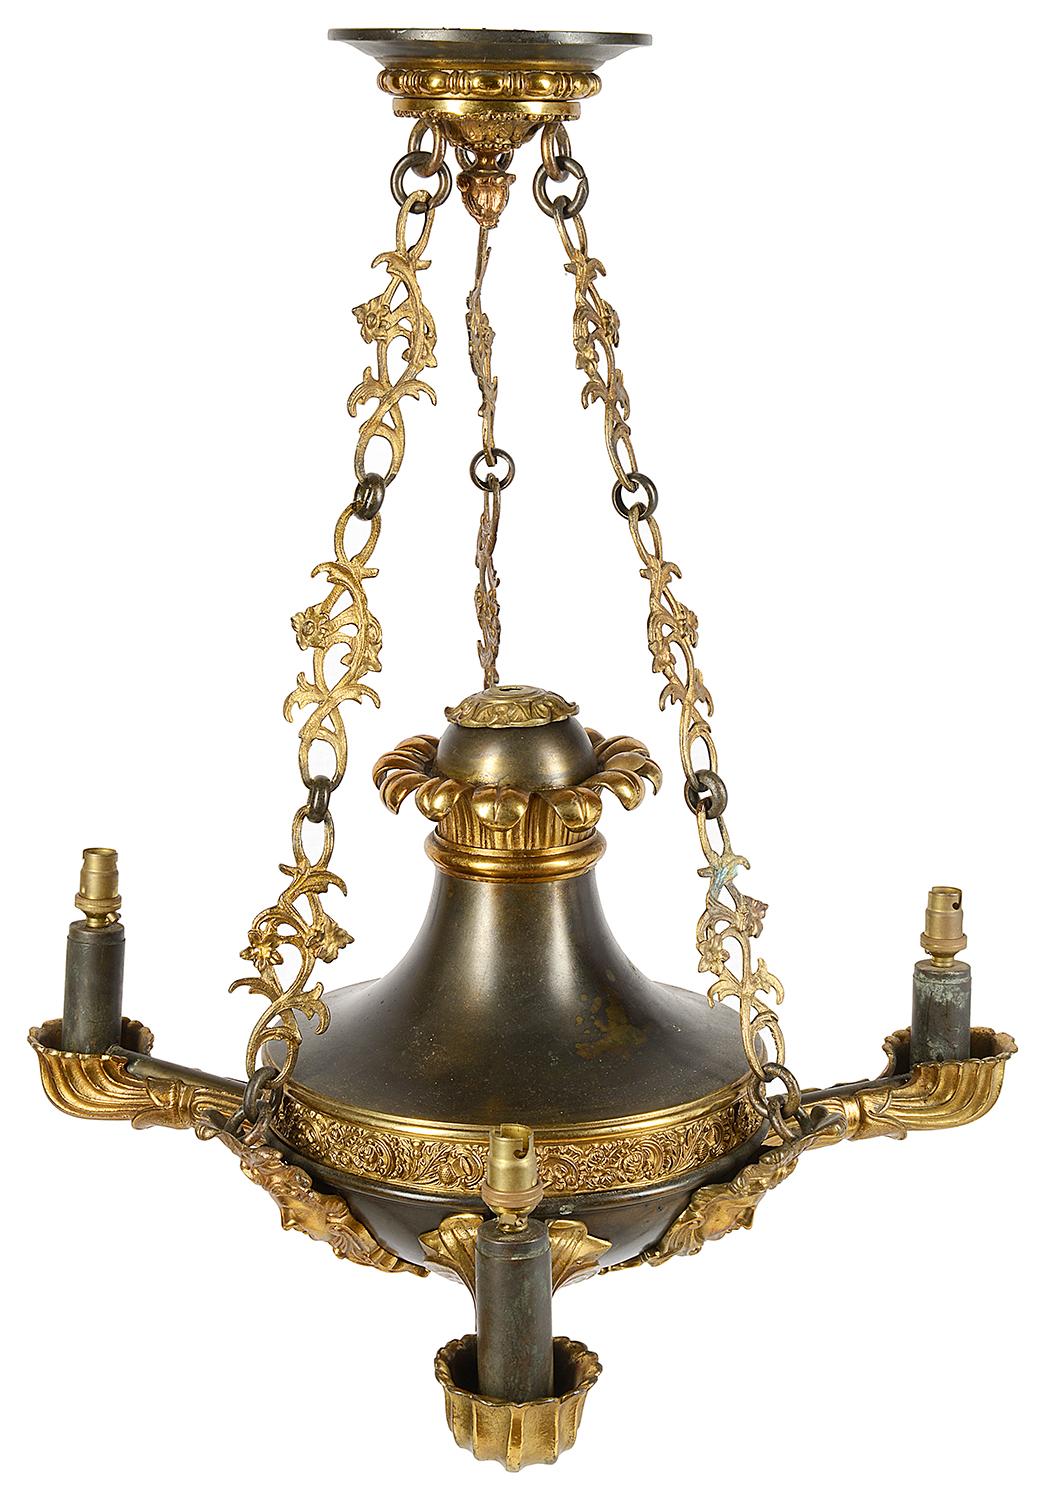 Eine gute Qualität 19. Jahrhundert Bronze und vergoldet Ormolu Französisch Empire beeinflusst Kronleuchter. Mit einer klassischen Deckenrosette mit drei mit Blättern besetzten Ketten, die den dreiflügeligen Kronleuchter mit drei Masken mit